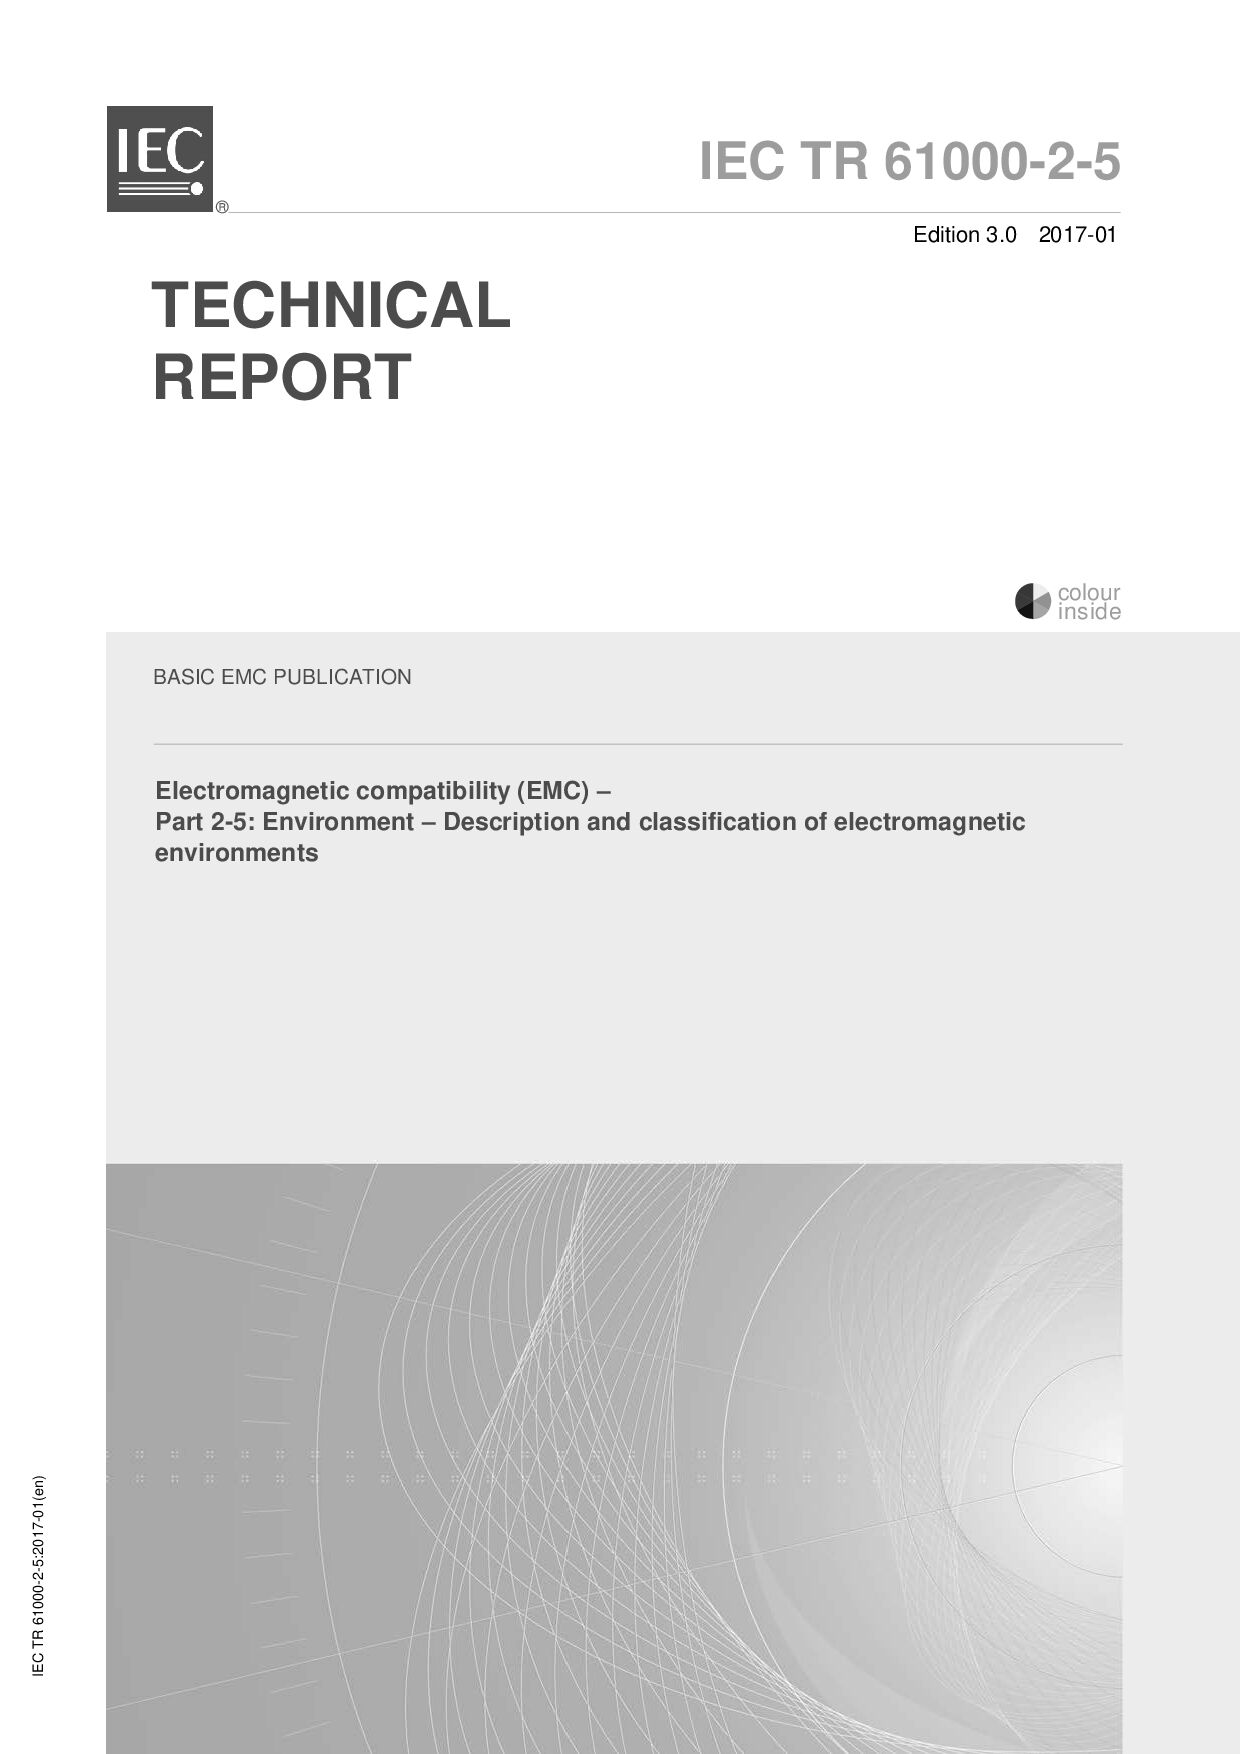 IEC TR 61000-2-5:2017封面图